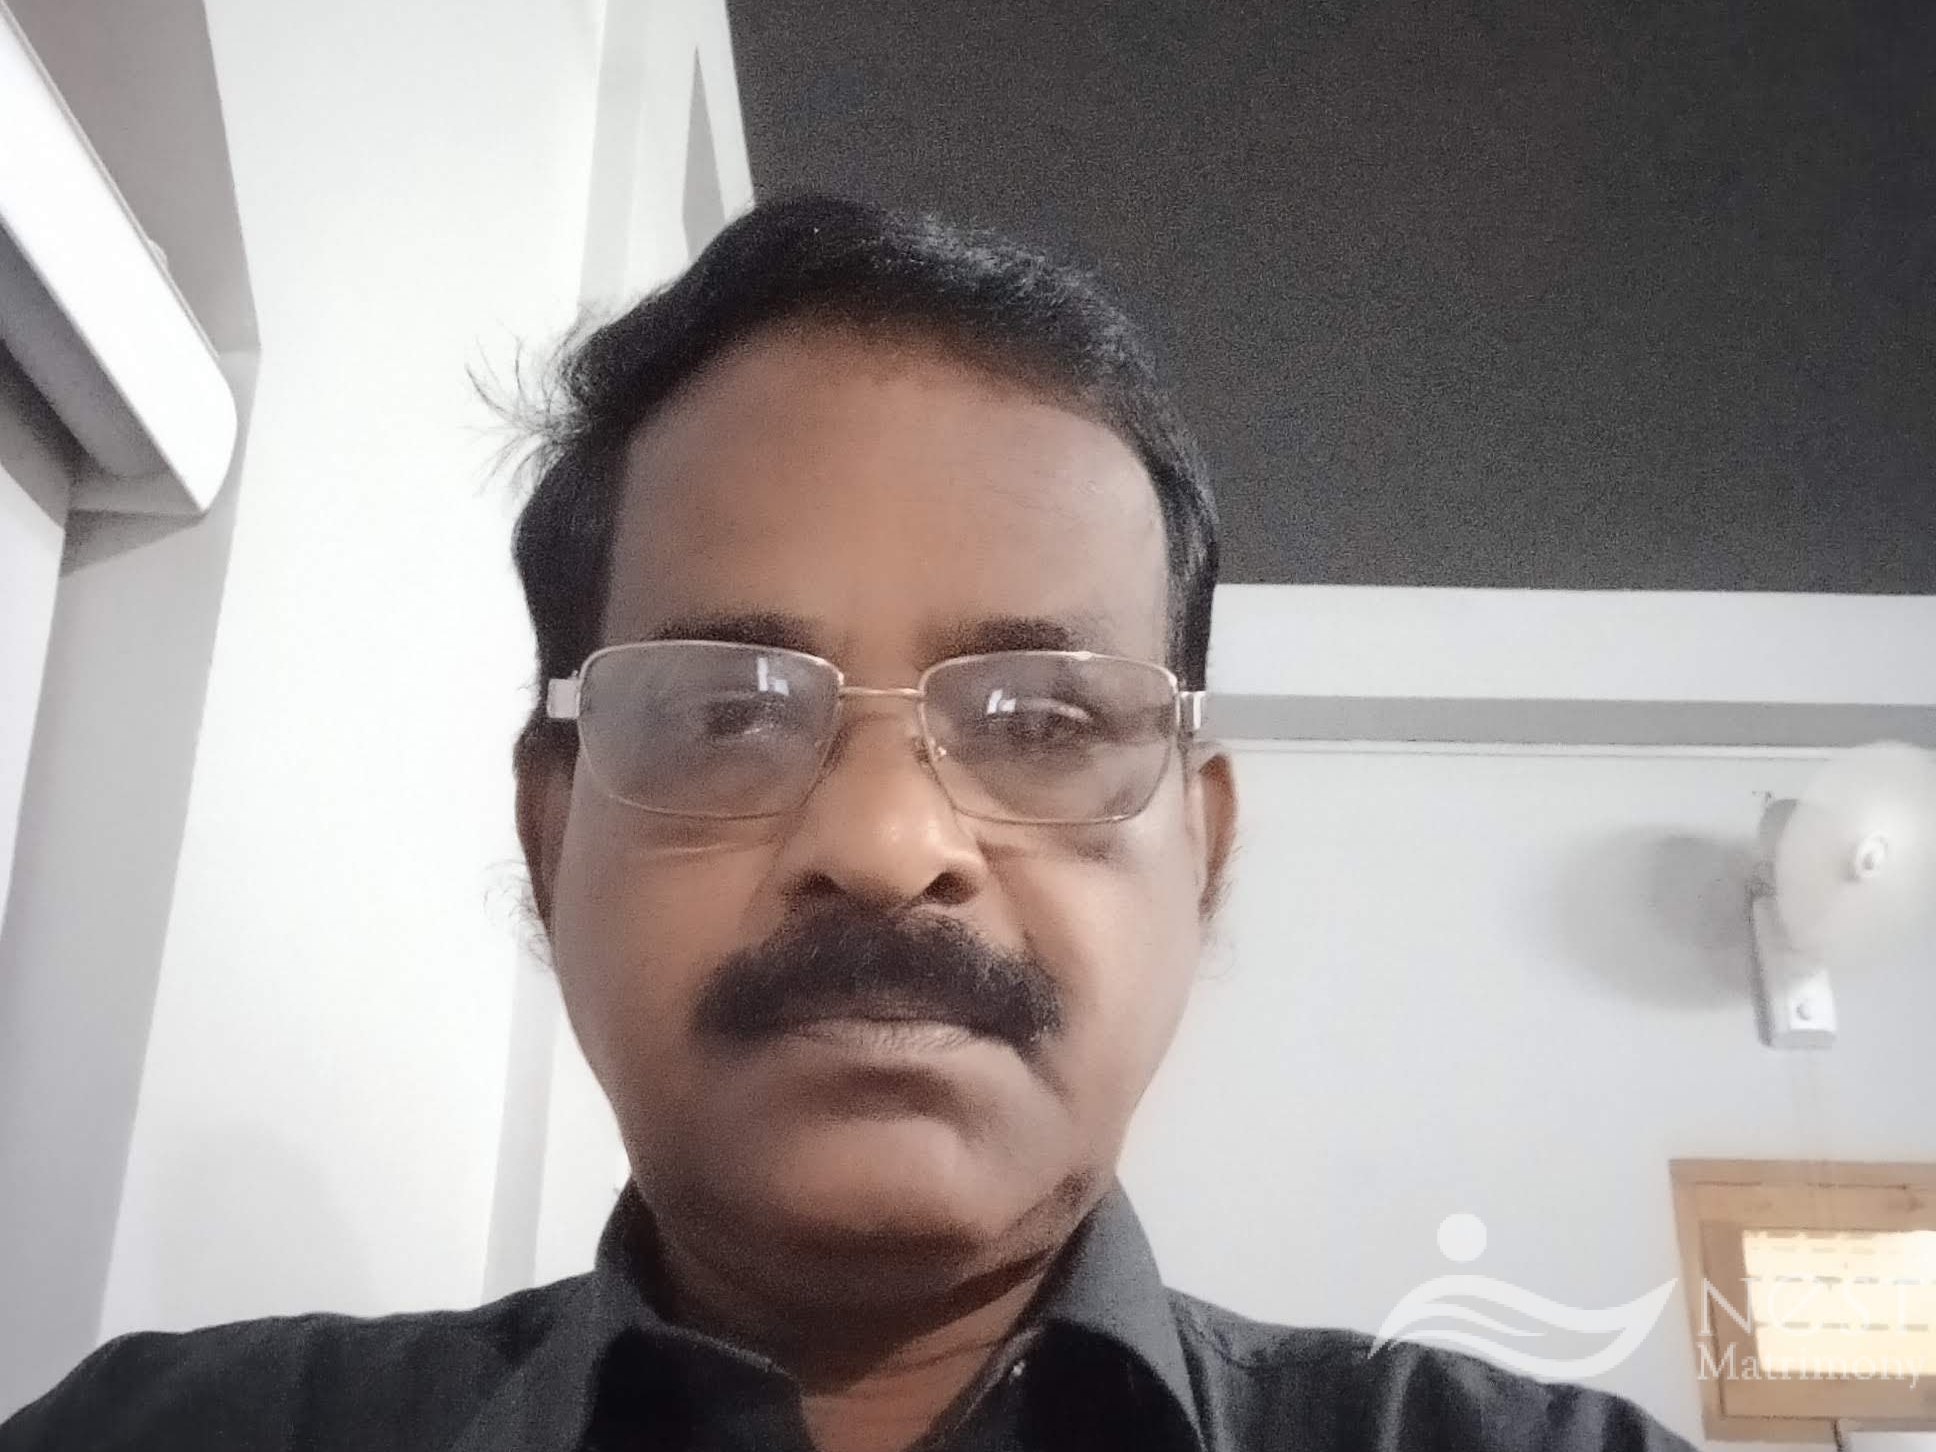 Rajendran Nair